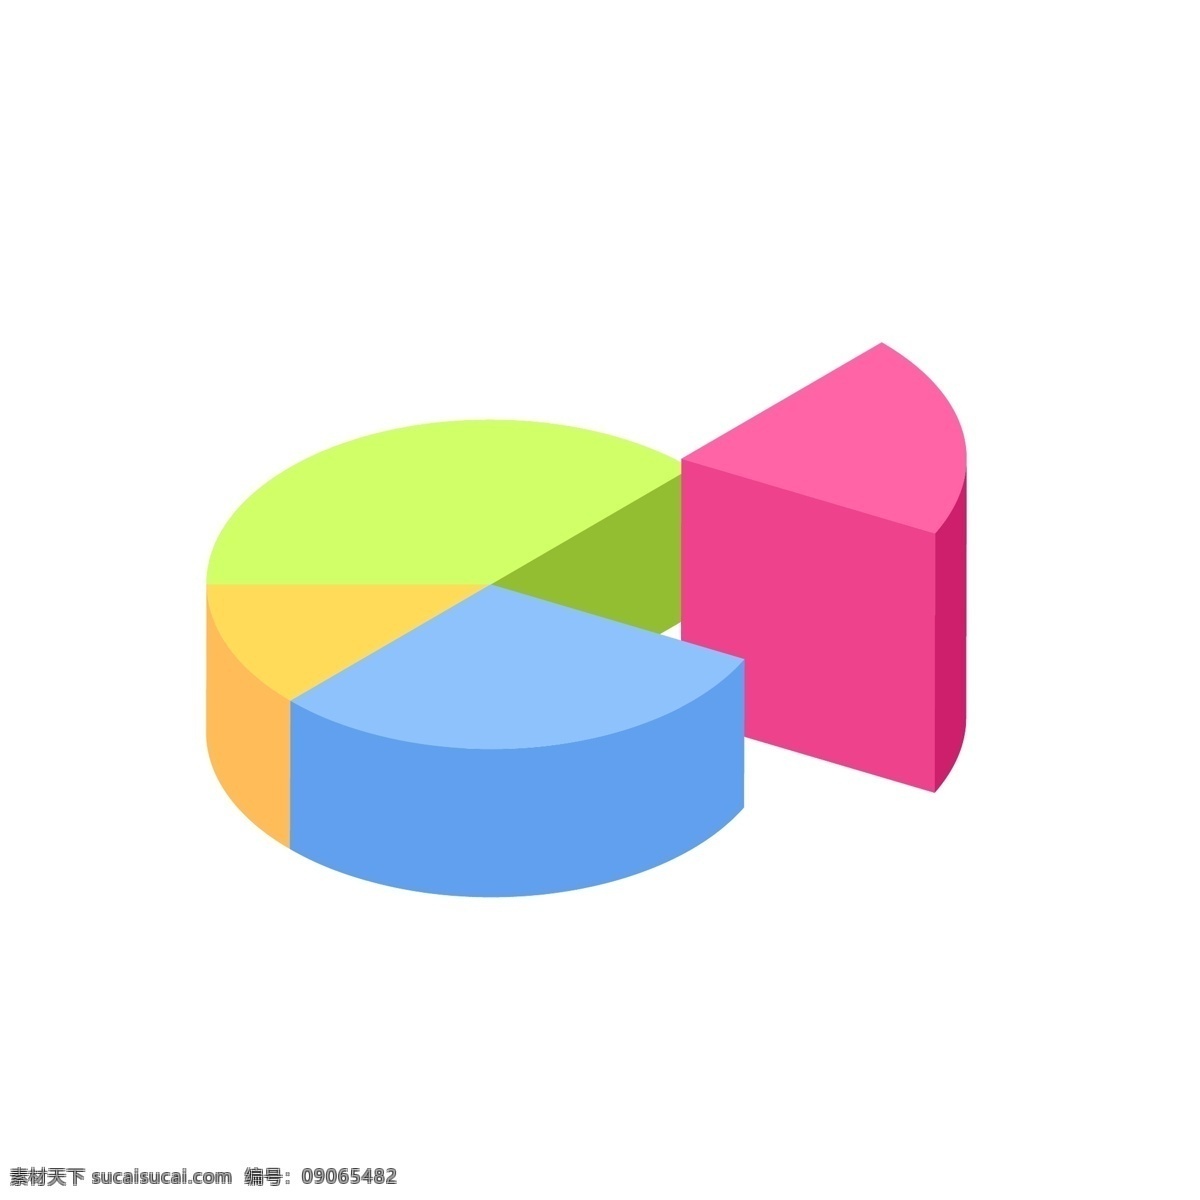 商务 矢量 数据 立体 饼 状 分析图 ppt图表 彩色信息图表 矢量信息图表 图表 图 环形图表 科技